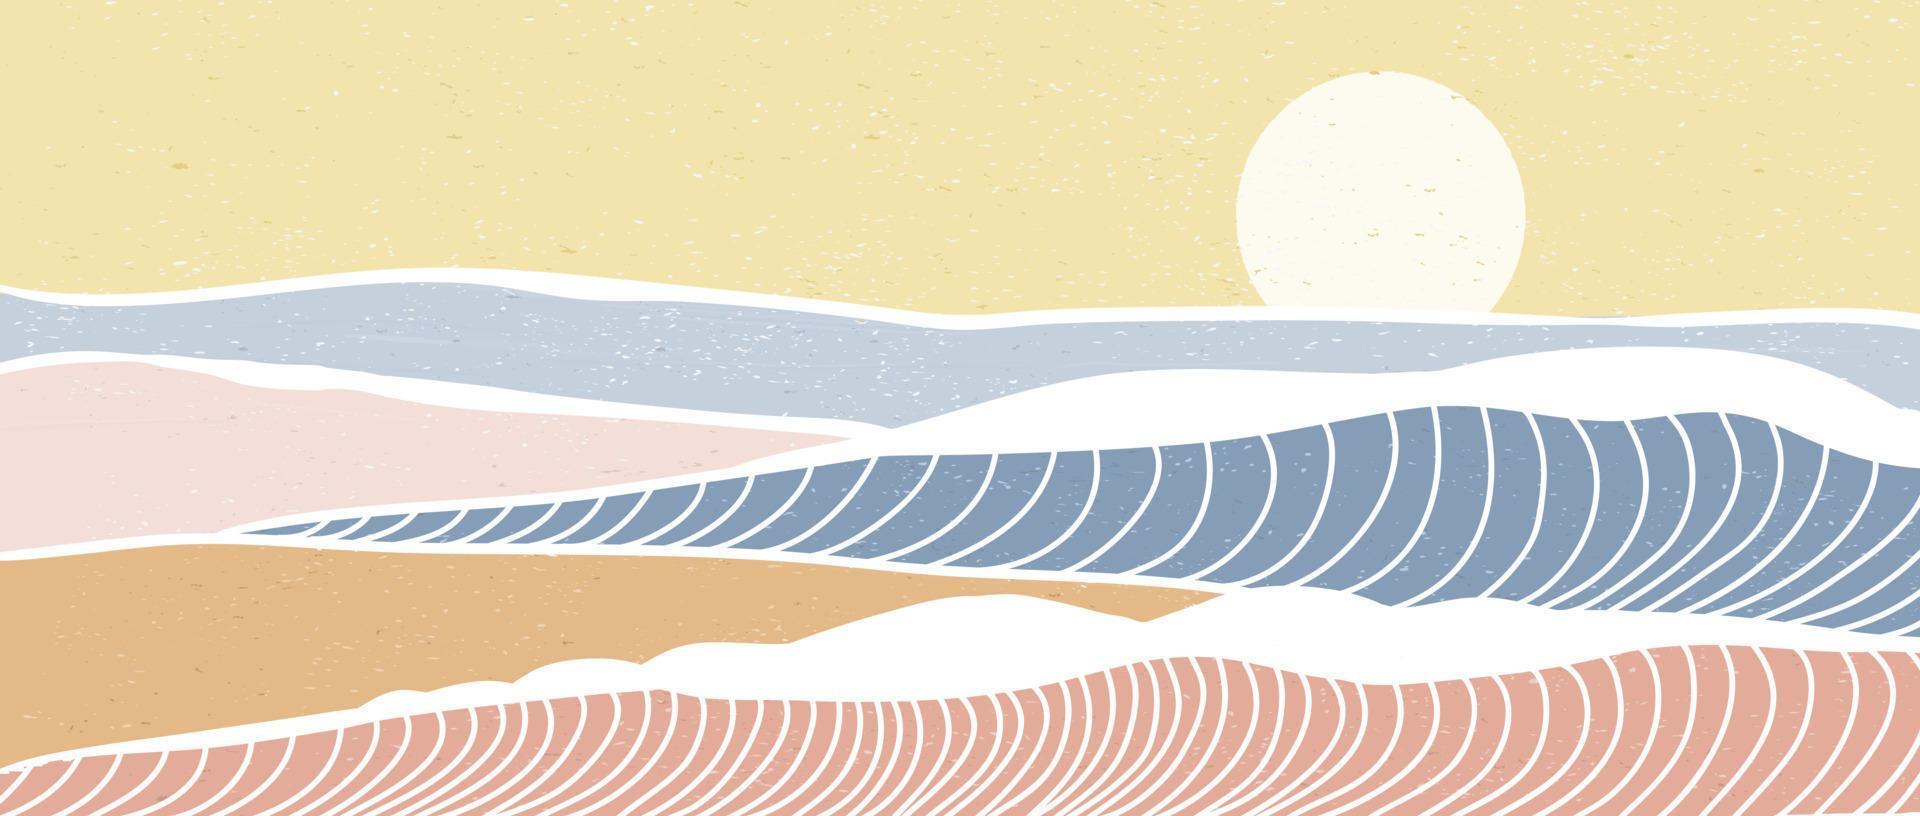 impresión de arte de línea moderna minimalista. paisajes abstractos de fondos estéticos contemporáneos de olas oceánicas y montañas. con mar, horizonte, ola. ilustraciones vectoriales vector